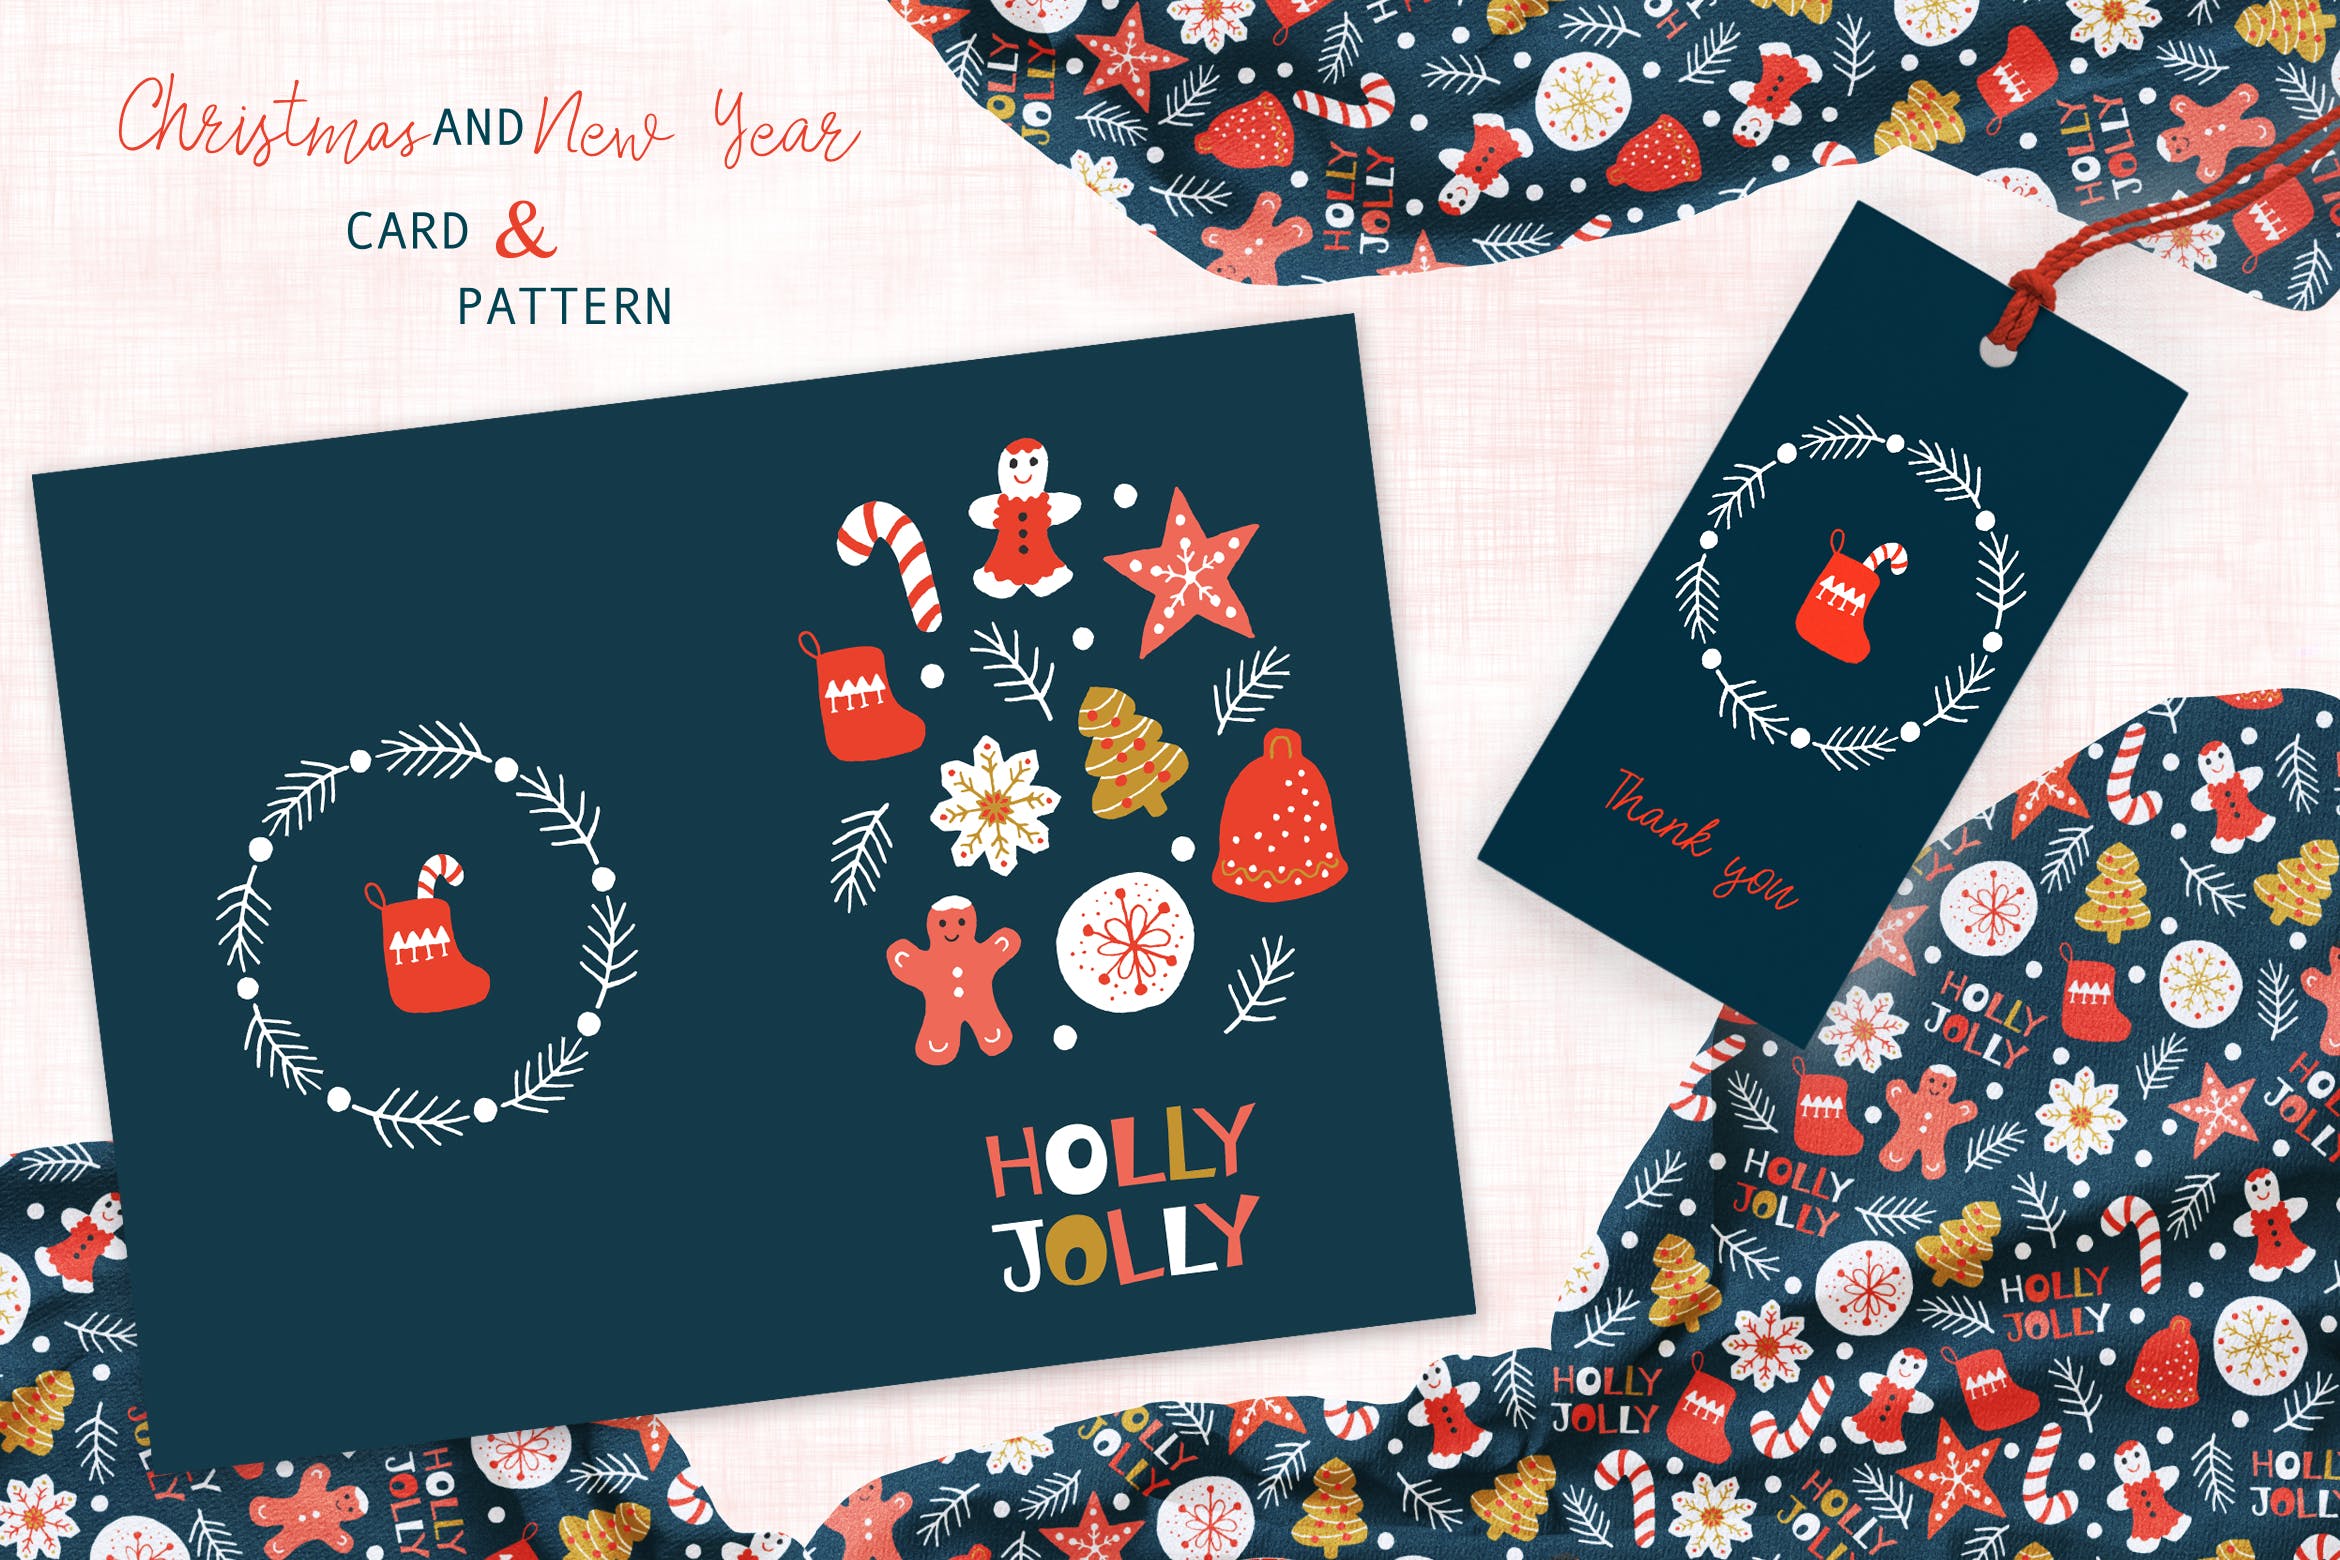 圣诞曲奇饼干手绘图案背景素材/贺卡设计模板 Christmas Cookies Greeting Card and Pattern插图